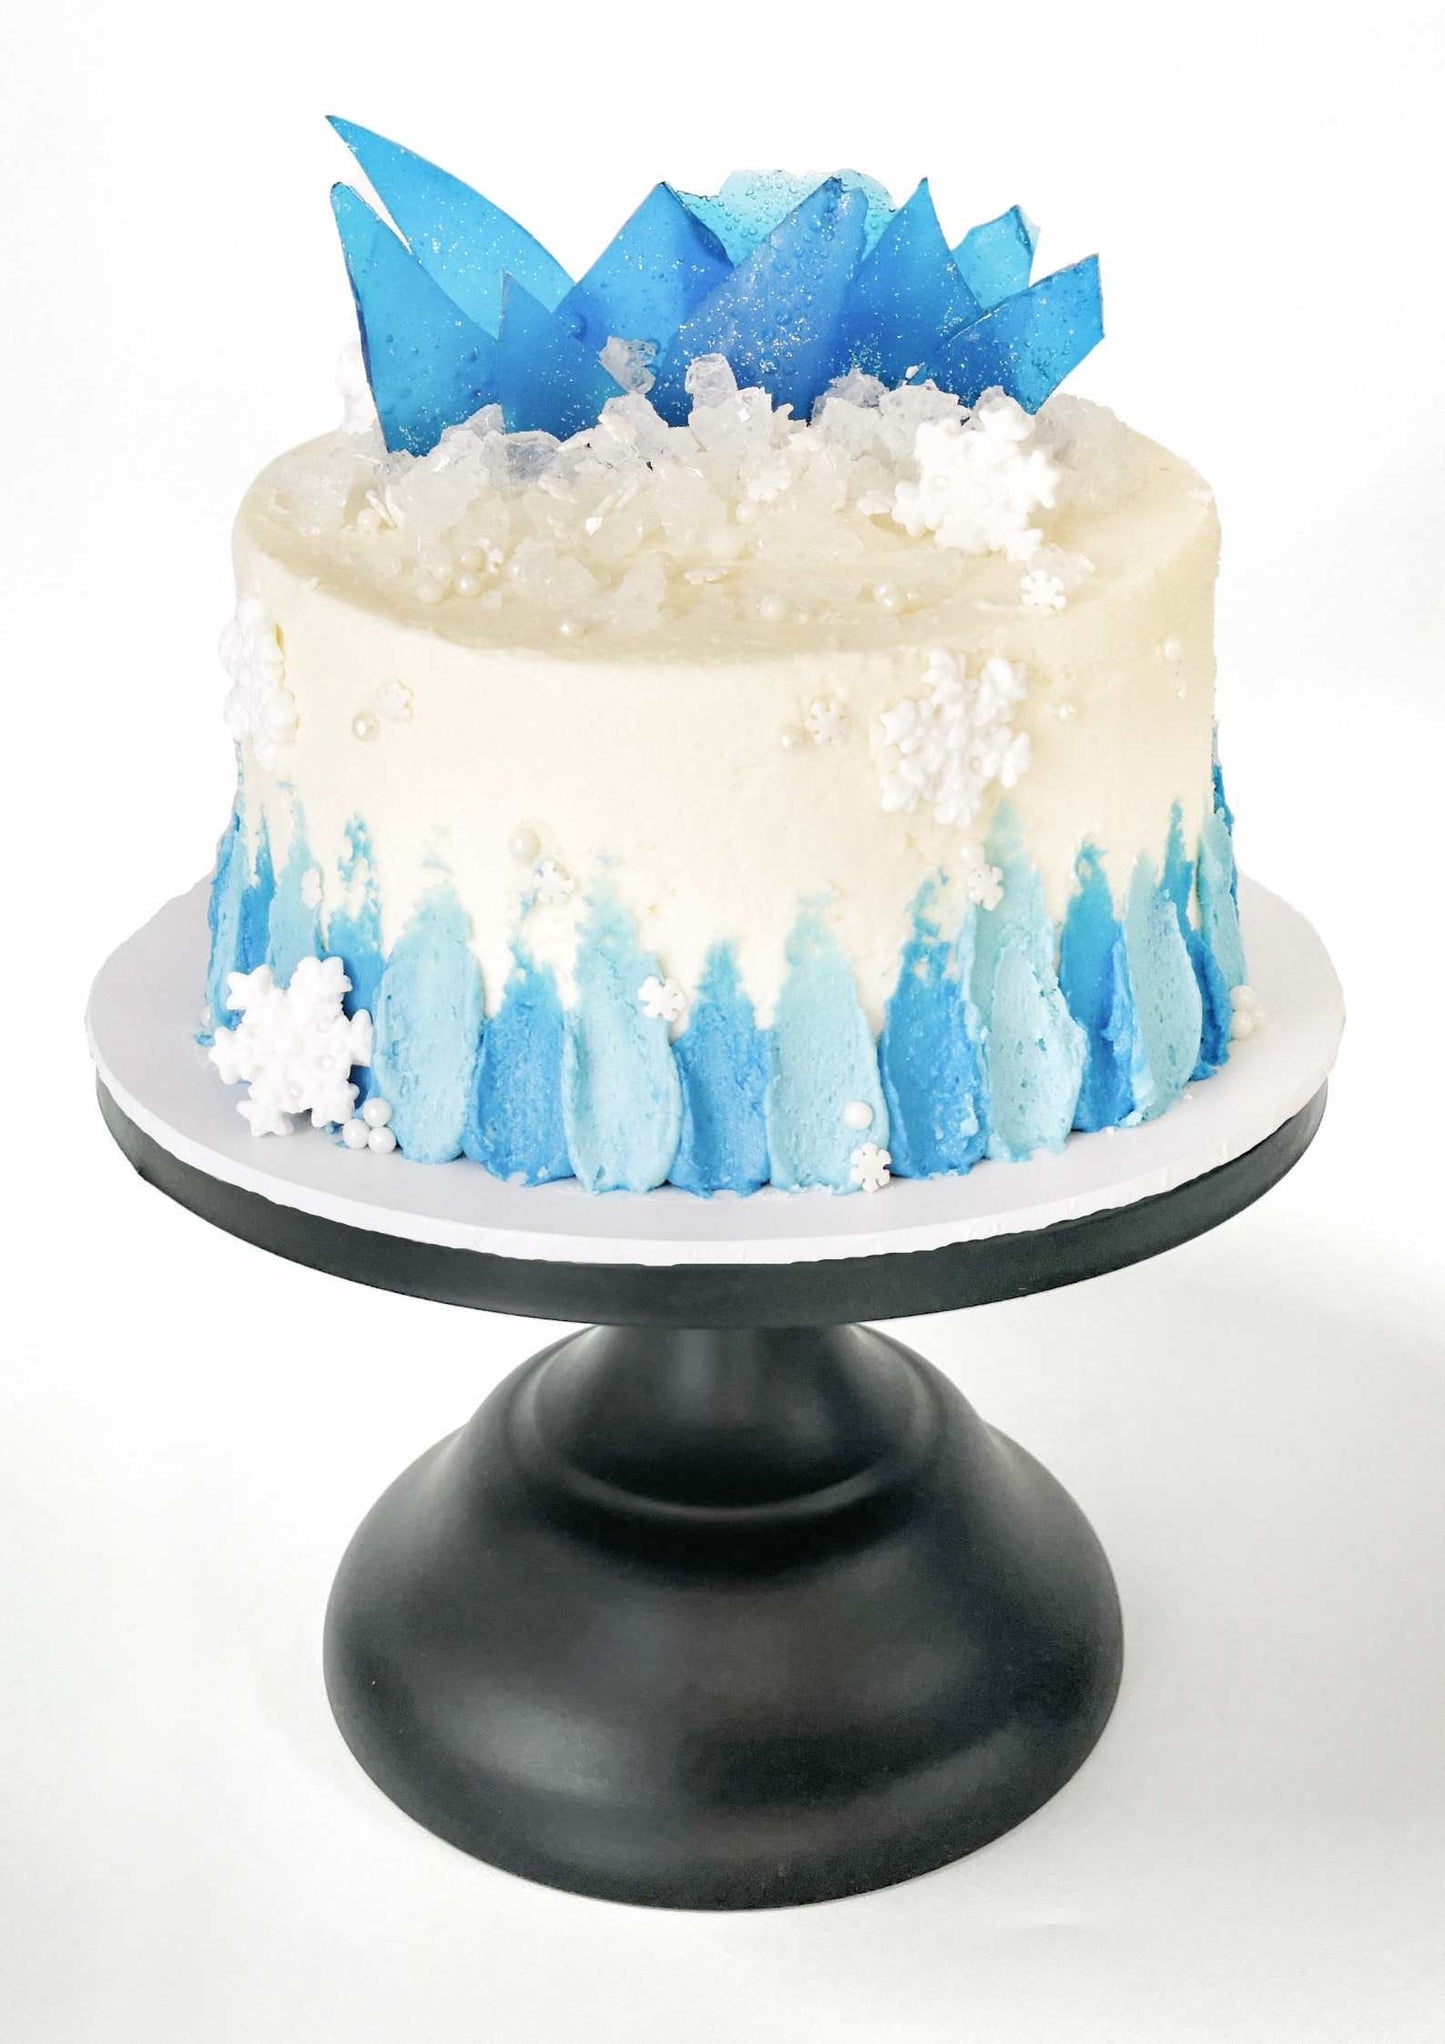 Frozen Cake, Frozen DIY Cake Kit, Winter Wonderland Cake, Iceland Cake, Ice Princess Cake, Snowflake Cake, Winter Cake